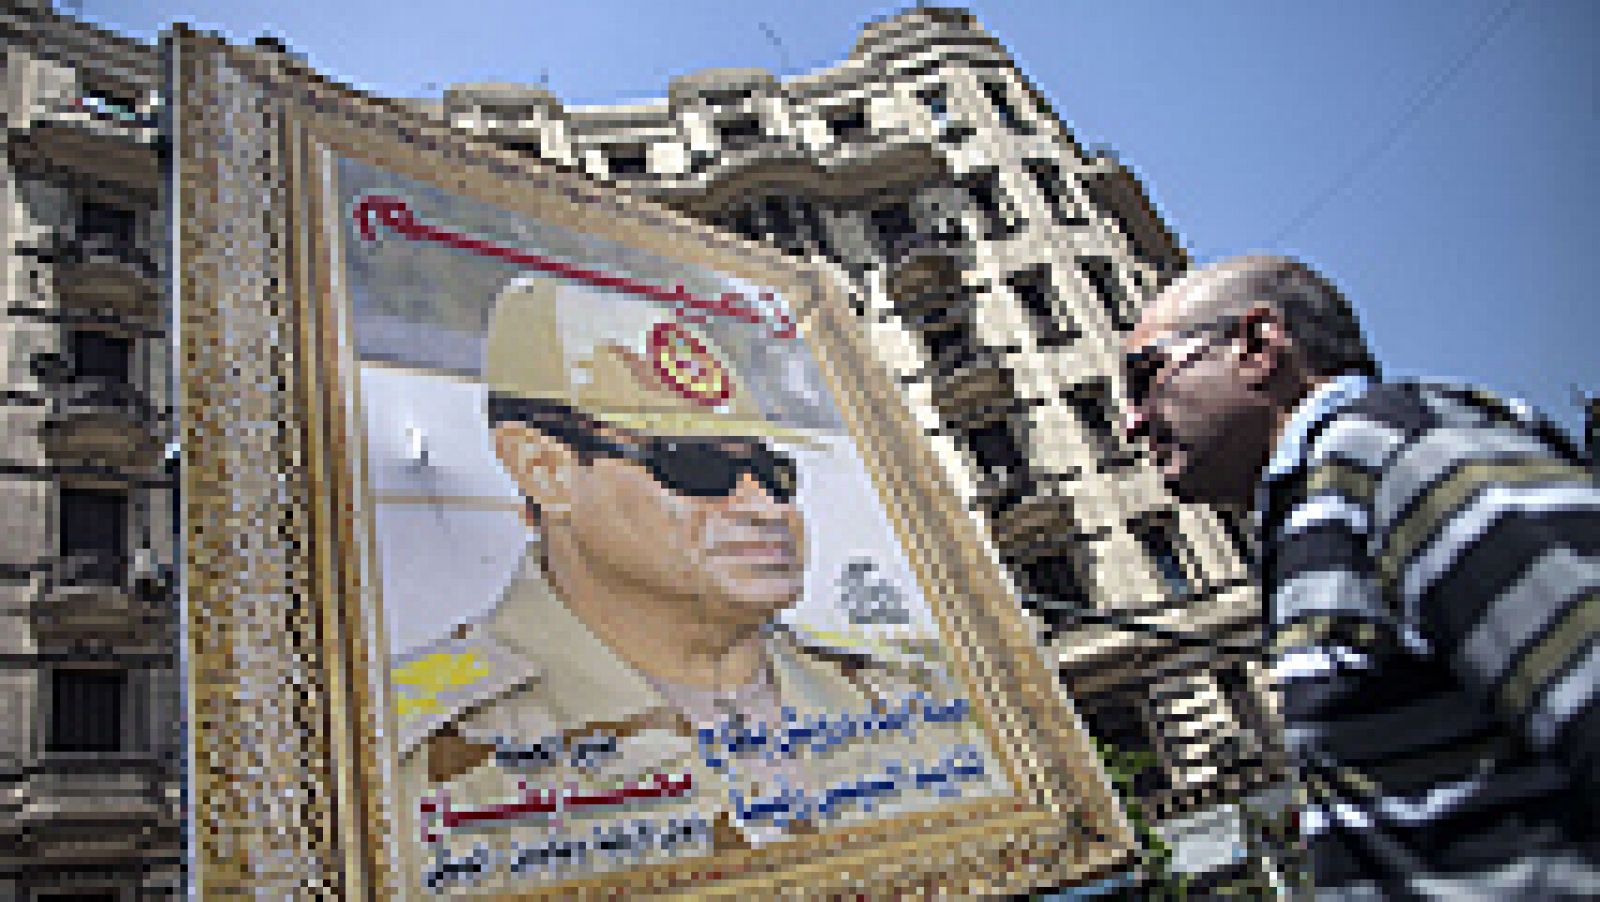  Los egipcios comenzaron hoy a votar en unas elecciones presidenciales destinadas a encumbrar al exjefe del Ejército Abdelfatah al Sisi, al margen de las denuncias de irregularidades y del boicot islamista. Casi 54 millones de egipcios están llamados a votar en los cerca de 14.000 colegios electorales habilitados en todo el país, y que mañana volverán a hacerlo a la misma hora.